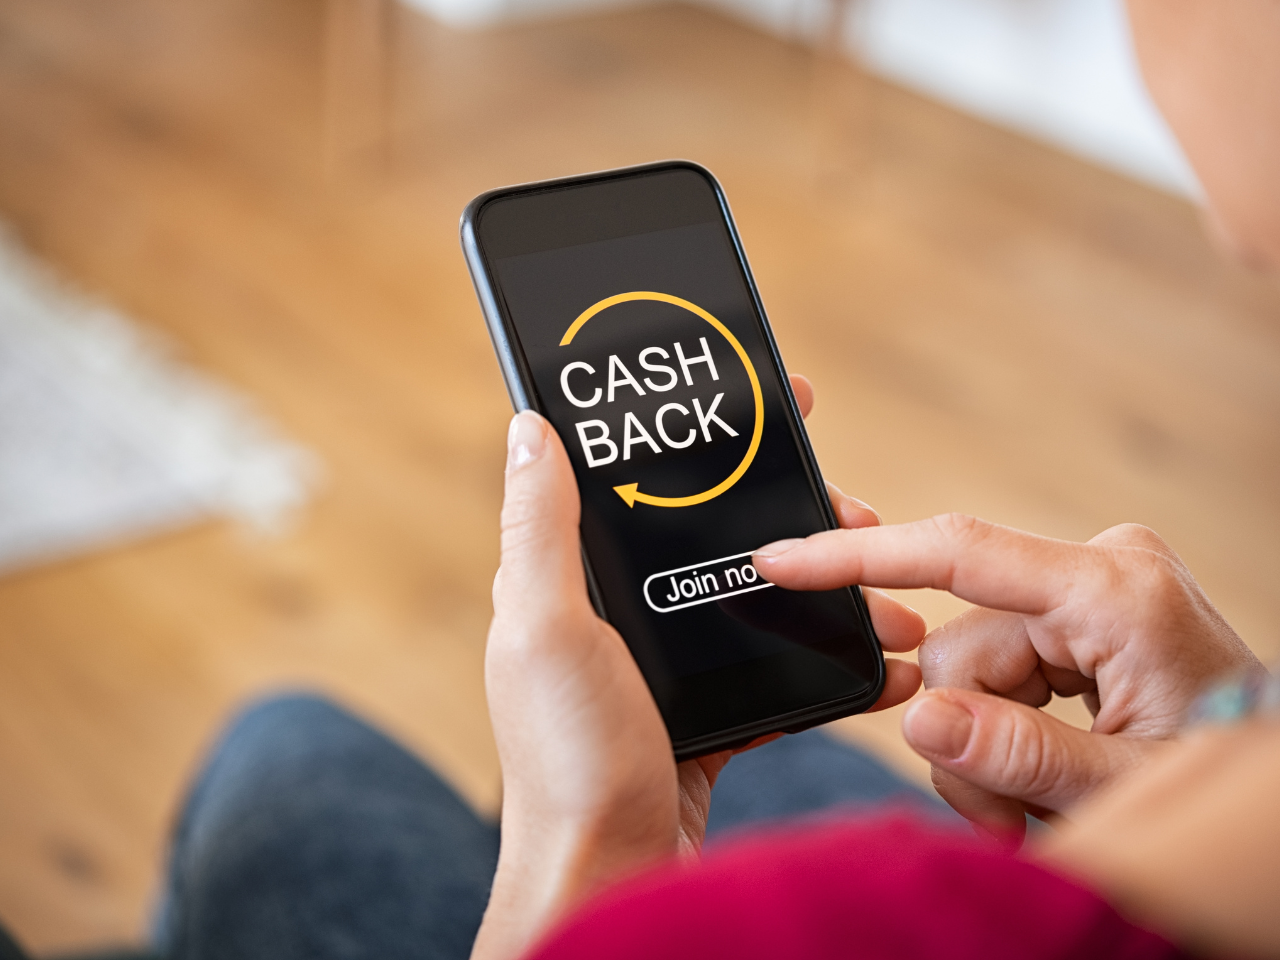 co to jest cashback i w jakich sklepach działa? - aplikacja do cashbacku